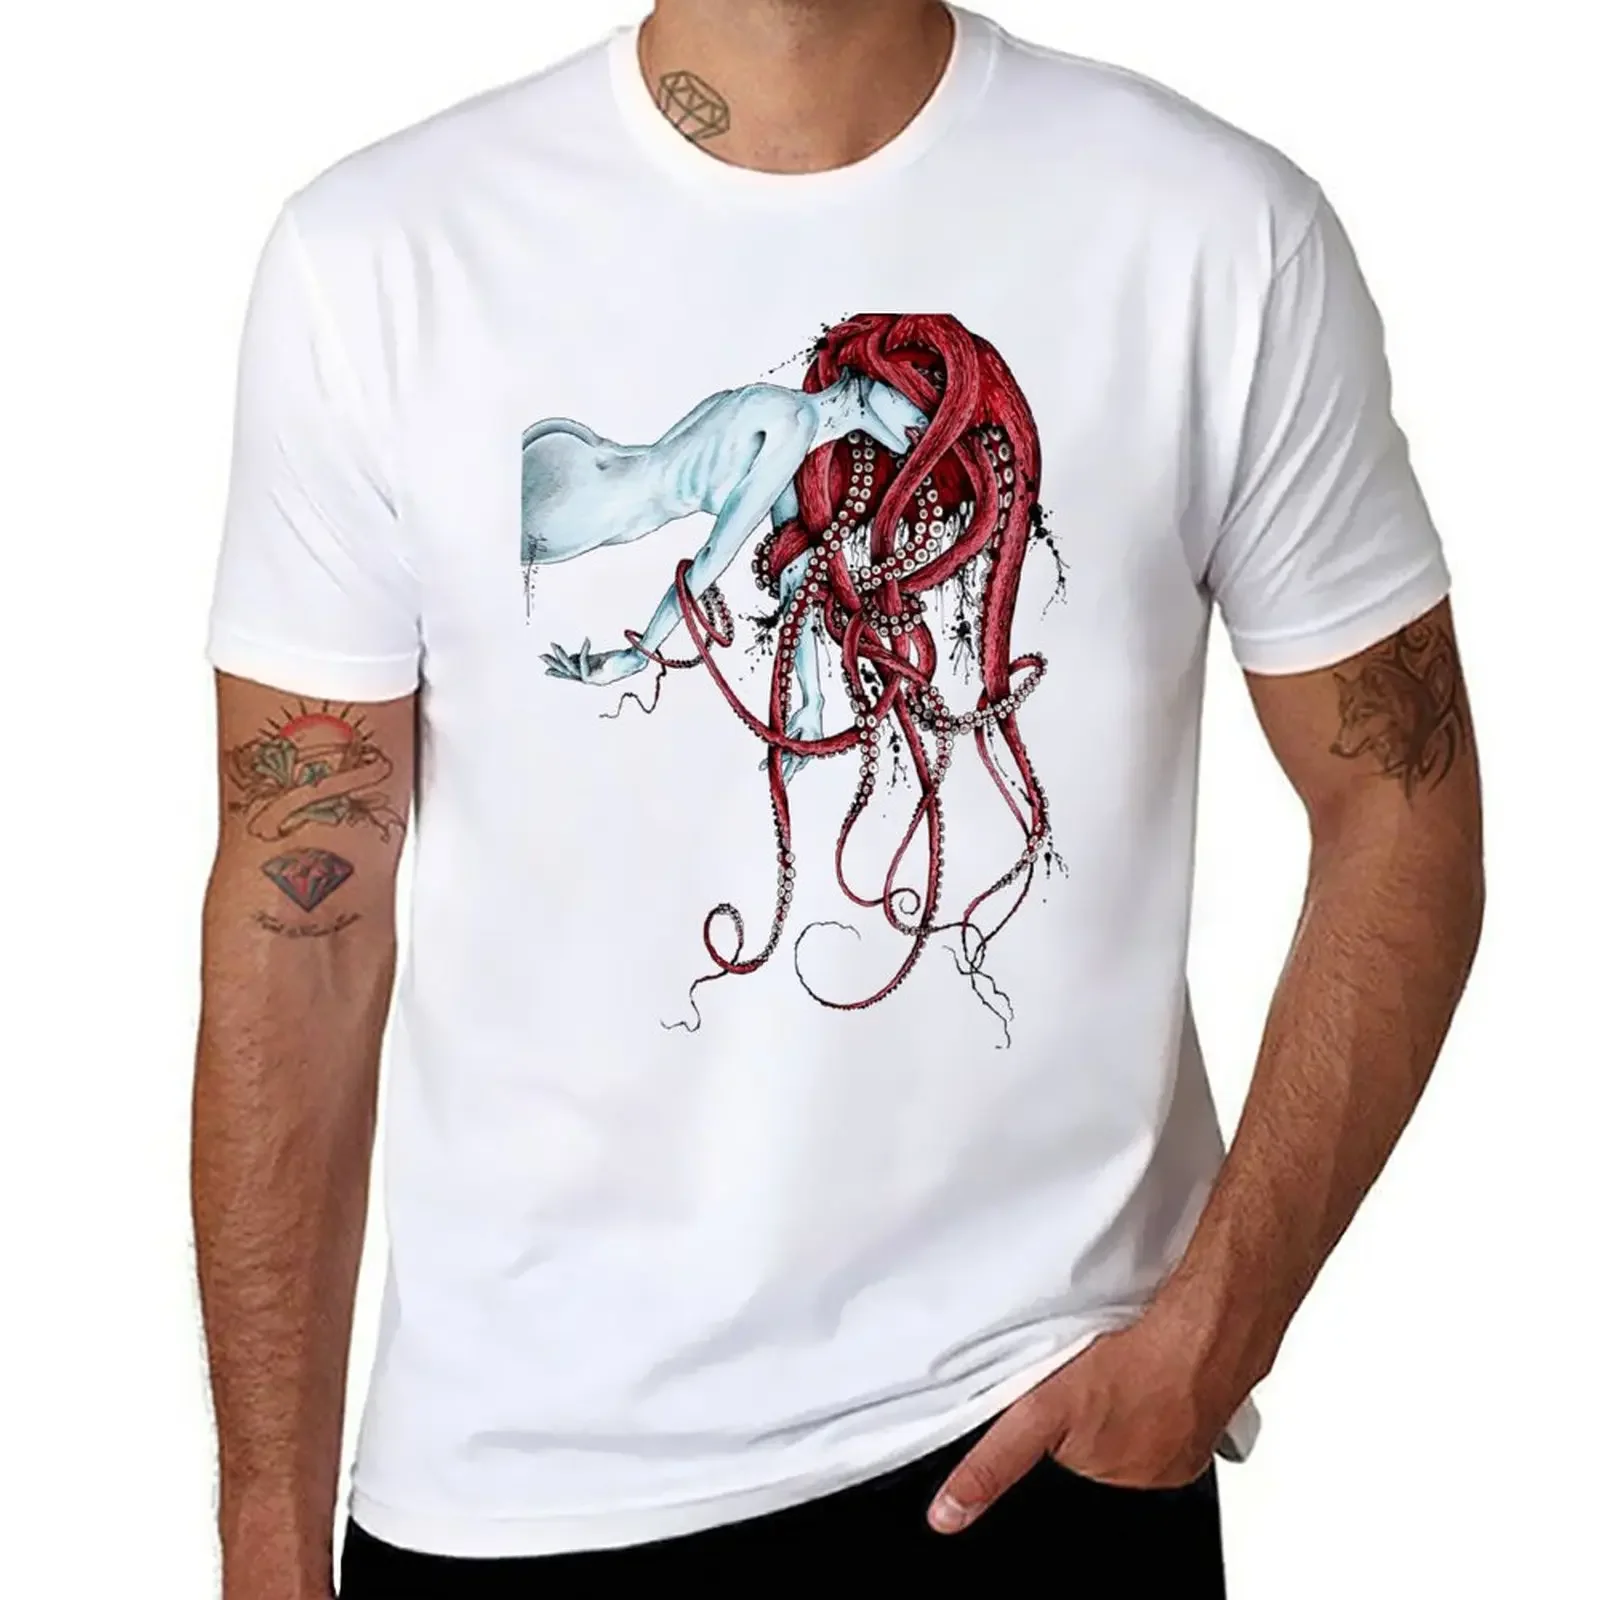 

Футболка Septoid, индивидуальный дизайн, ваша собственная футболка с коротким рукавом, Аниме Мужская одежда